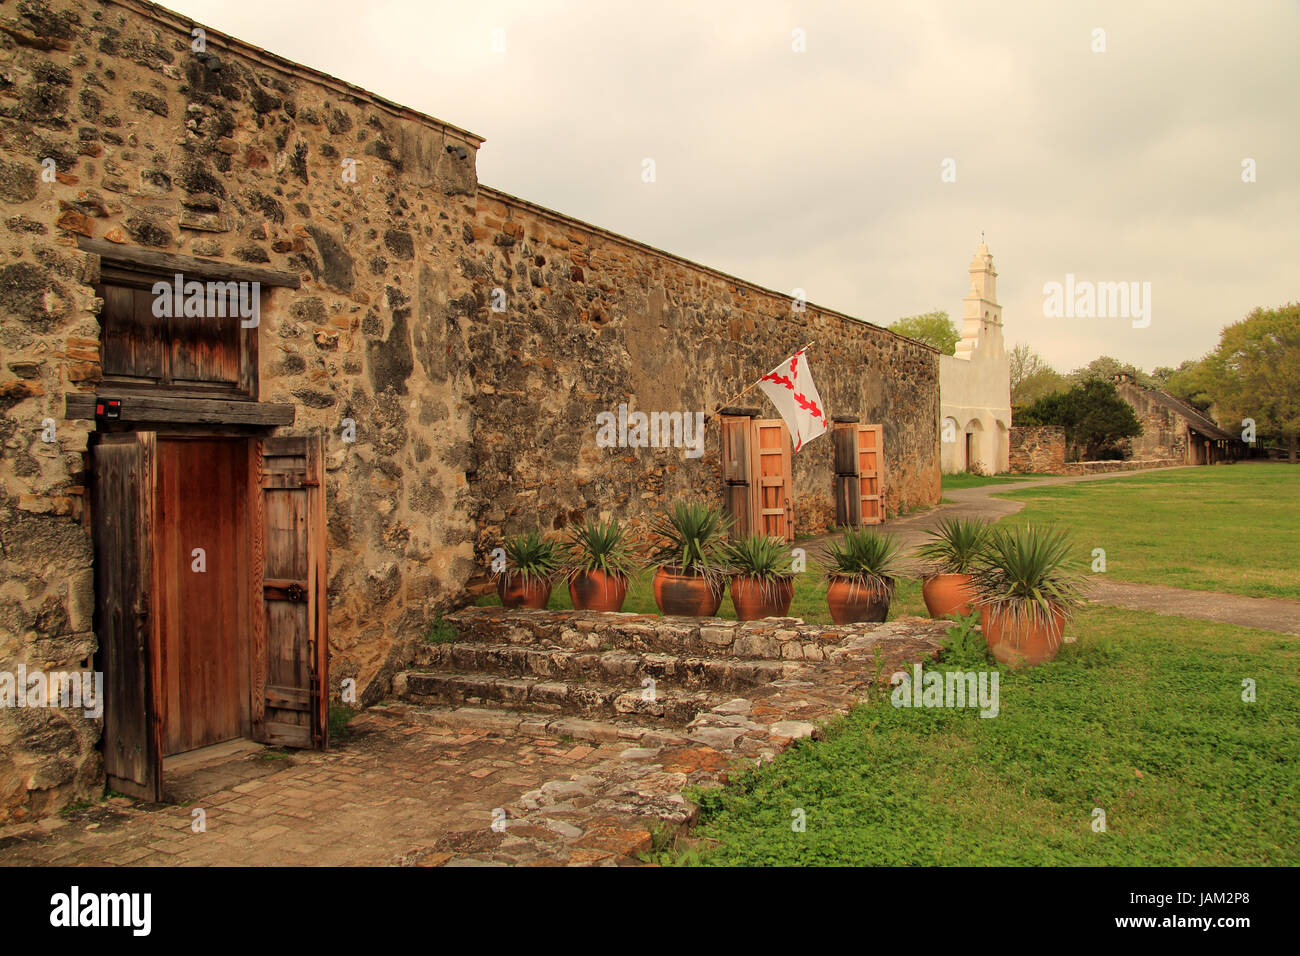 La missione di San Juan, qui illustrato, rappresenta una delle cinque missioni storiche costruite durante il dominio coloniale spagnolo, il più famoso dei quali è l'Alamo Foto Stock